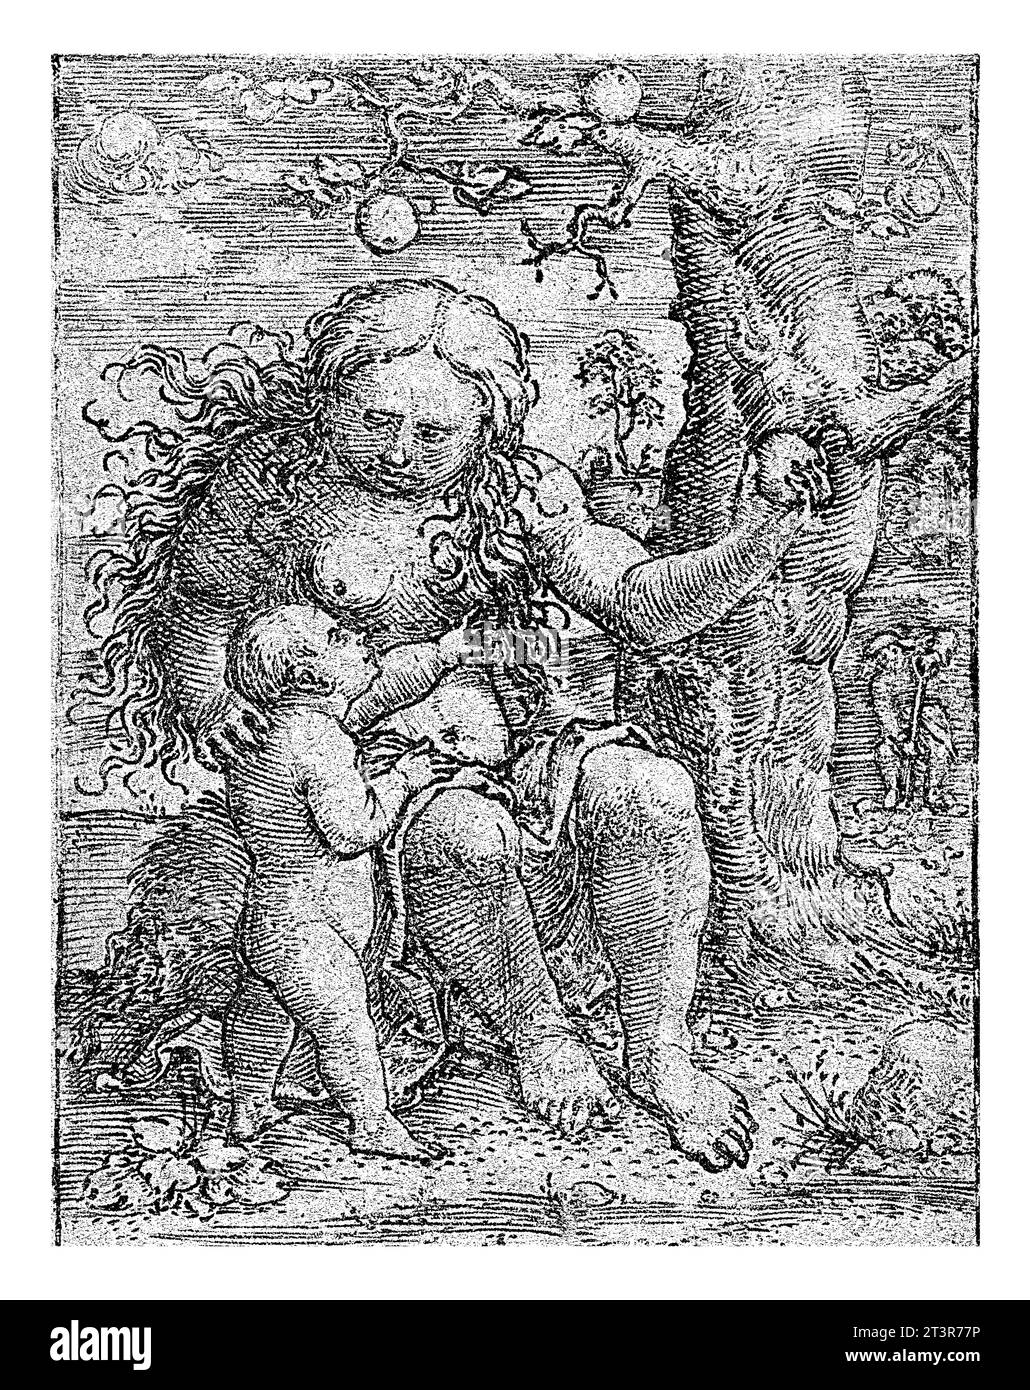 Eva und Cain, Dirck Vellert, 1522 Abend mit Apfel in der Hand, neben dem Baum. Kain lehnt sich auf ihr rechtes Knie und zeigt auf Apfel. Stockfoto